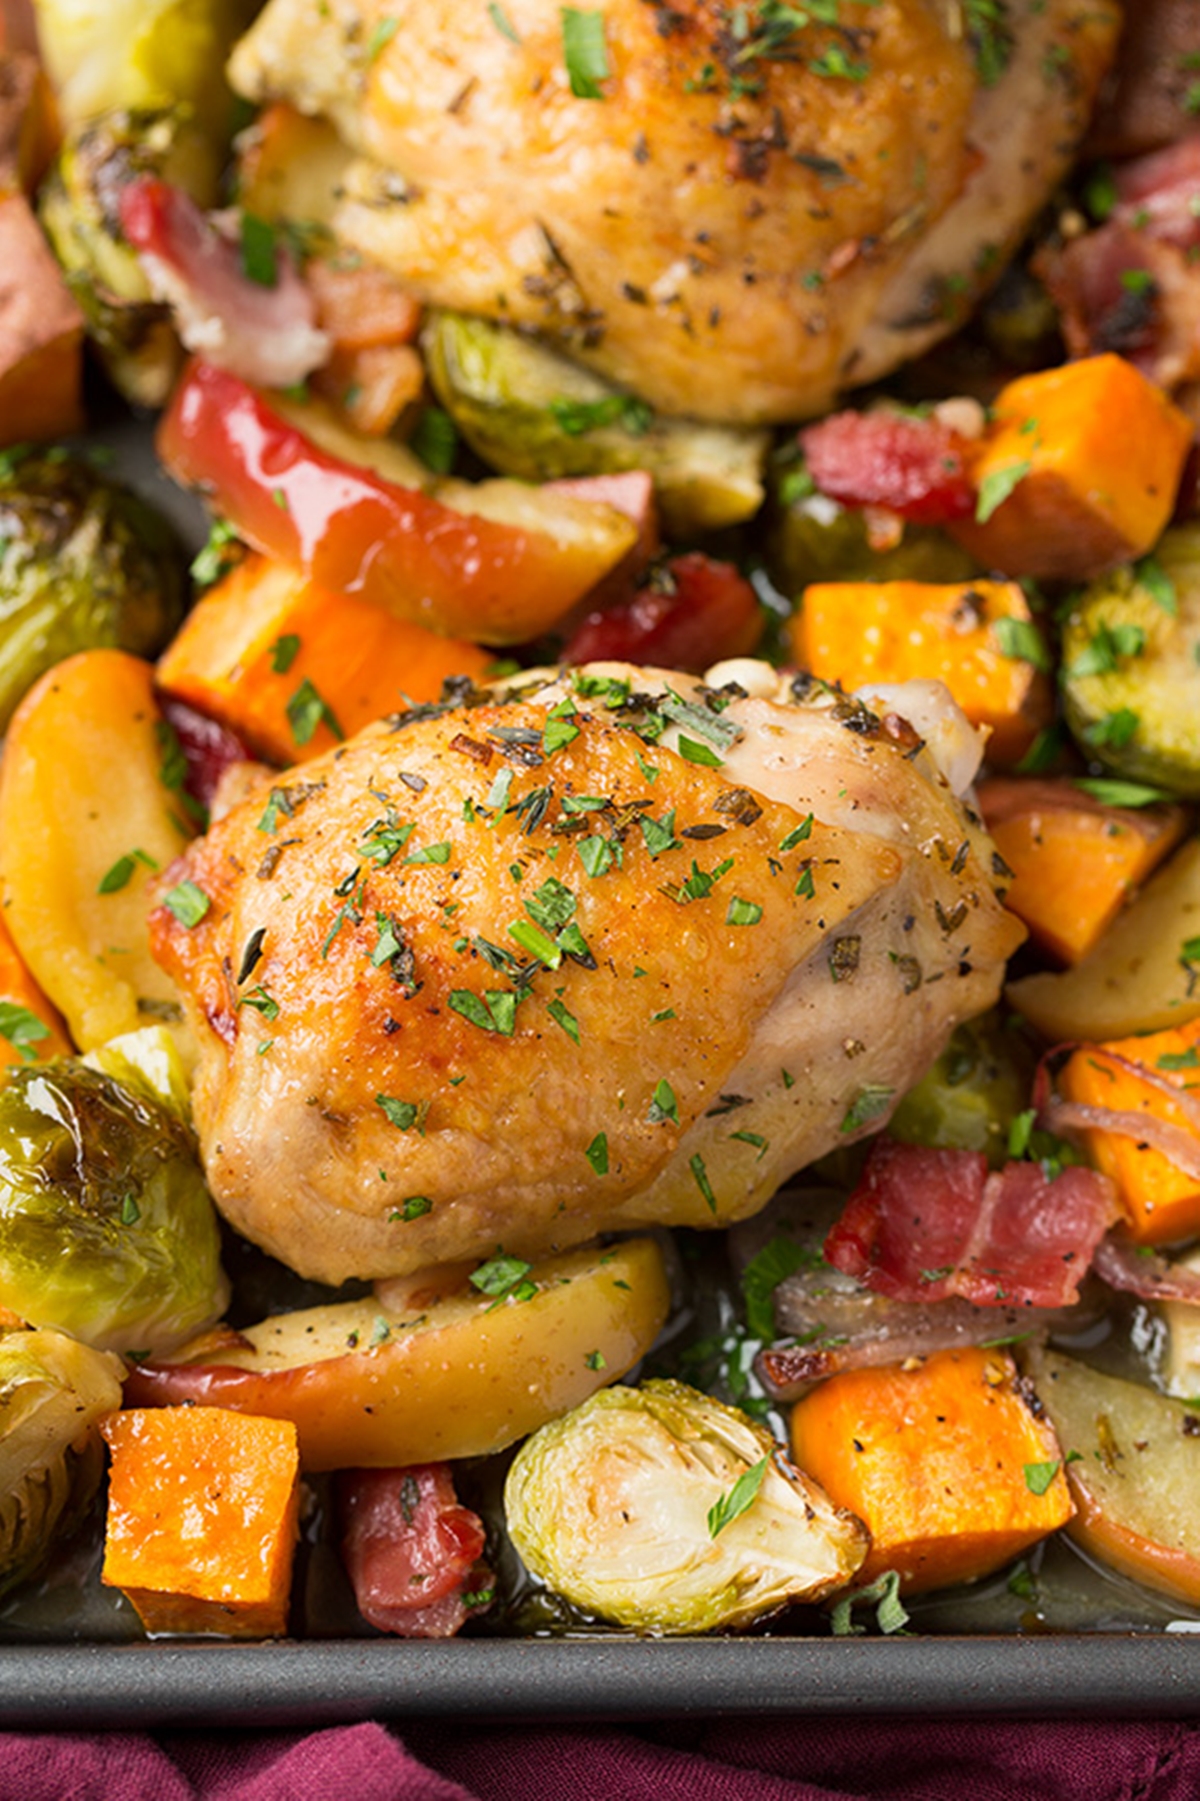 Запеченная курица с овощами рецепт. Курица с овощами. Бедра с овощами в духовке. Курица запеченная с овощами в духовке. Гарнир к курице.